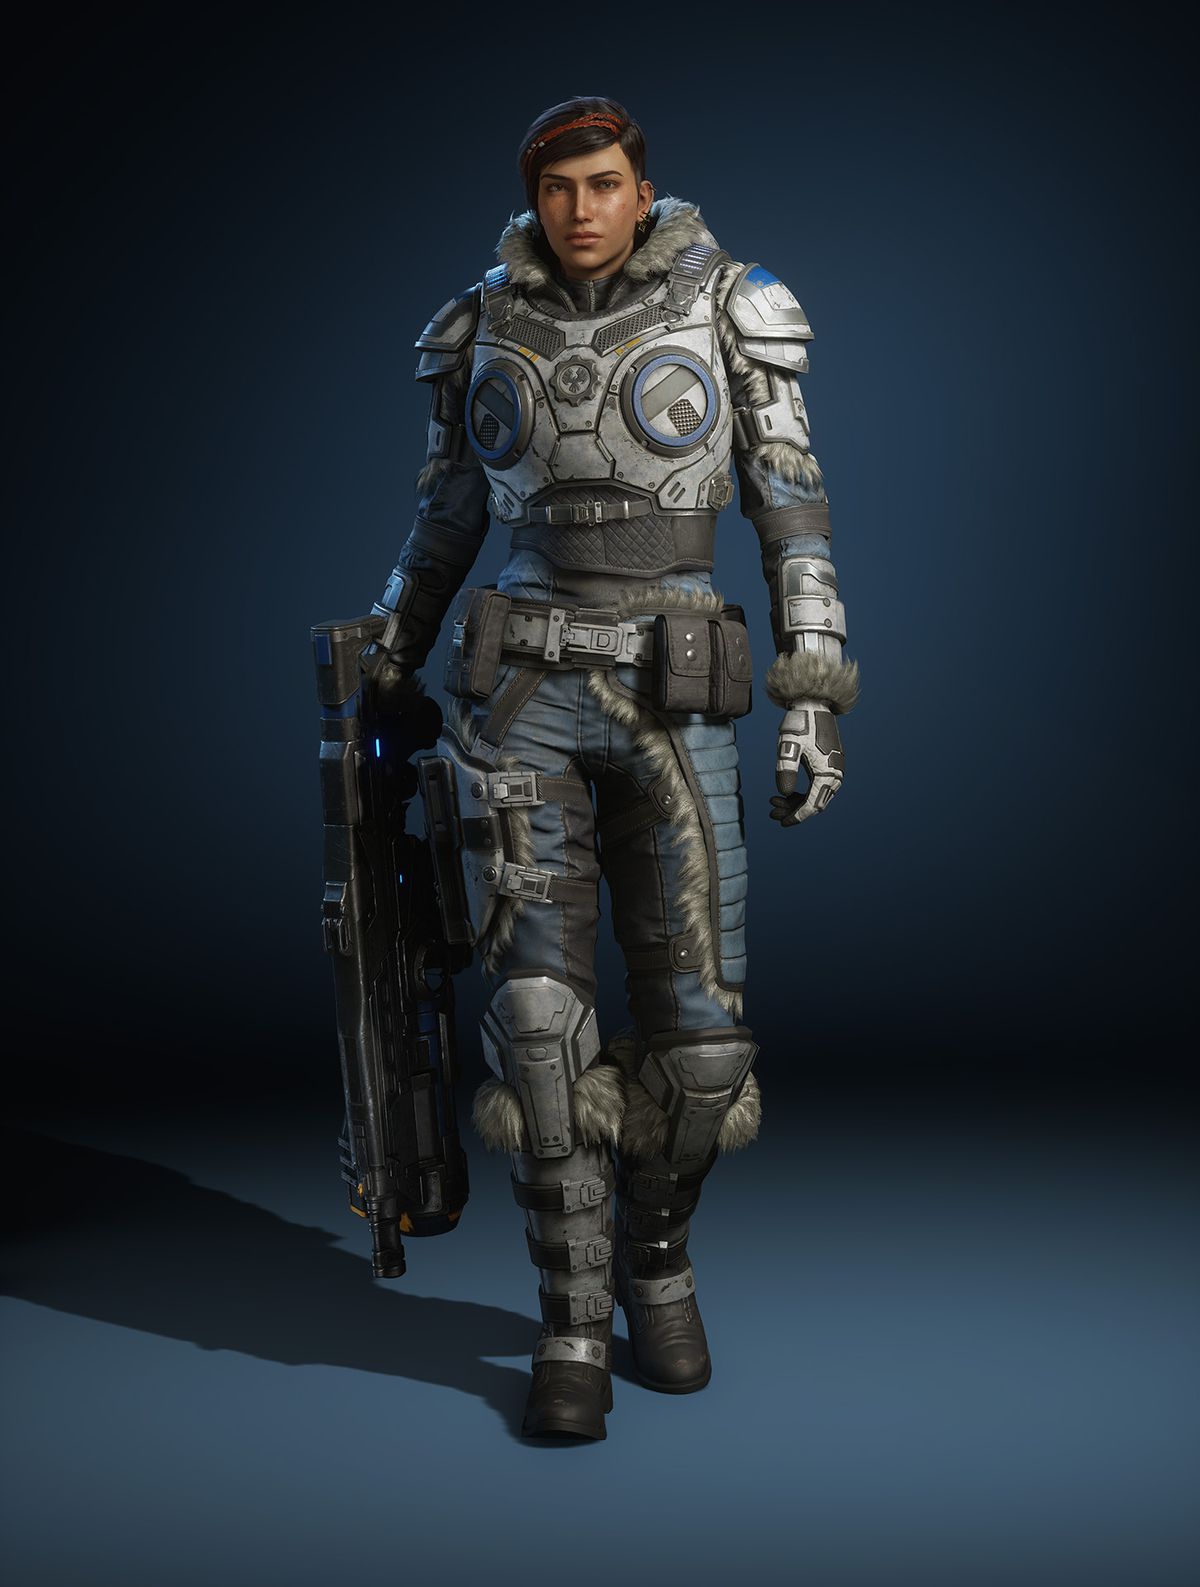 membuat karakter Gears 5 Kait Diaz dalam pakaian musim dingin memegang pistol di sisinya